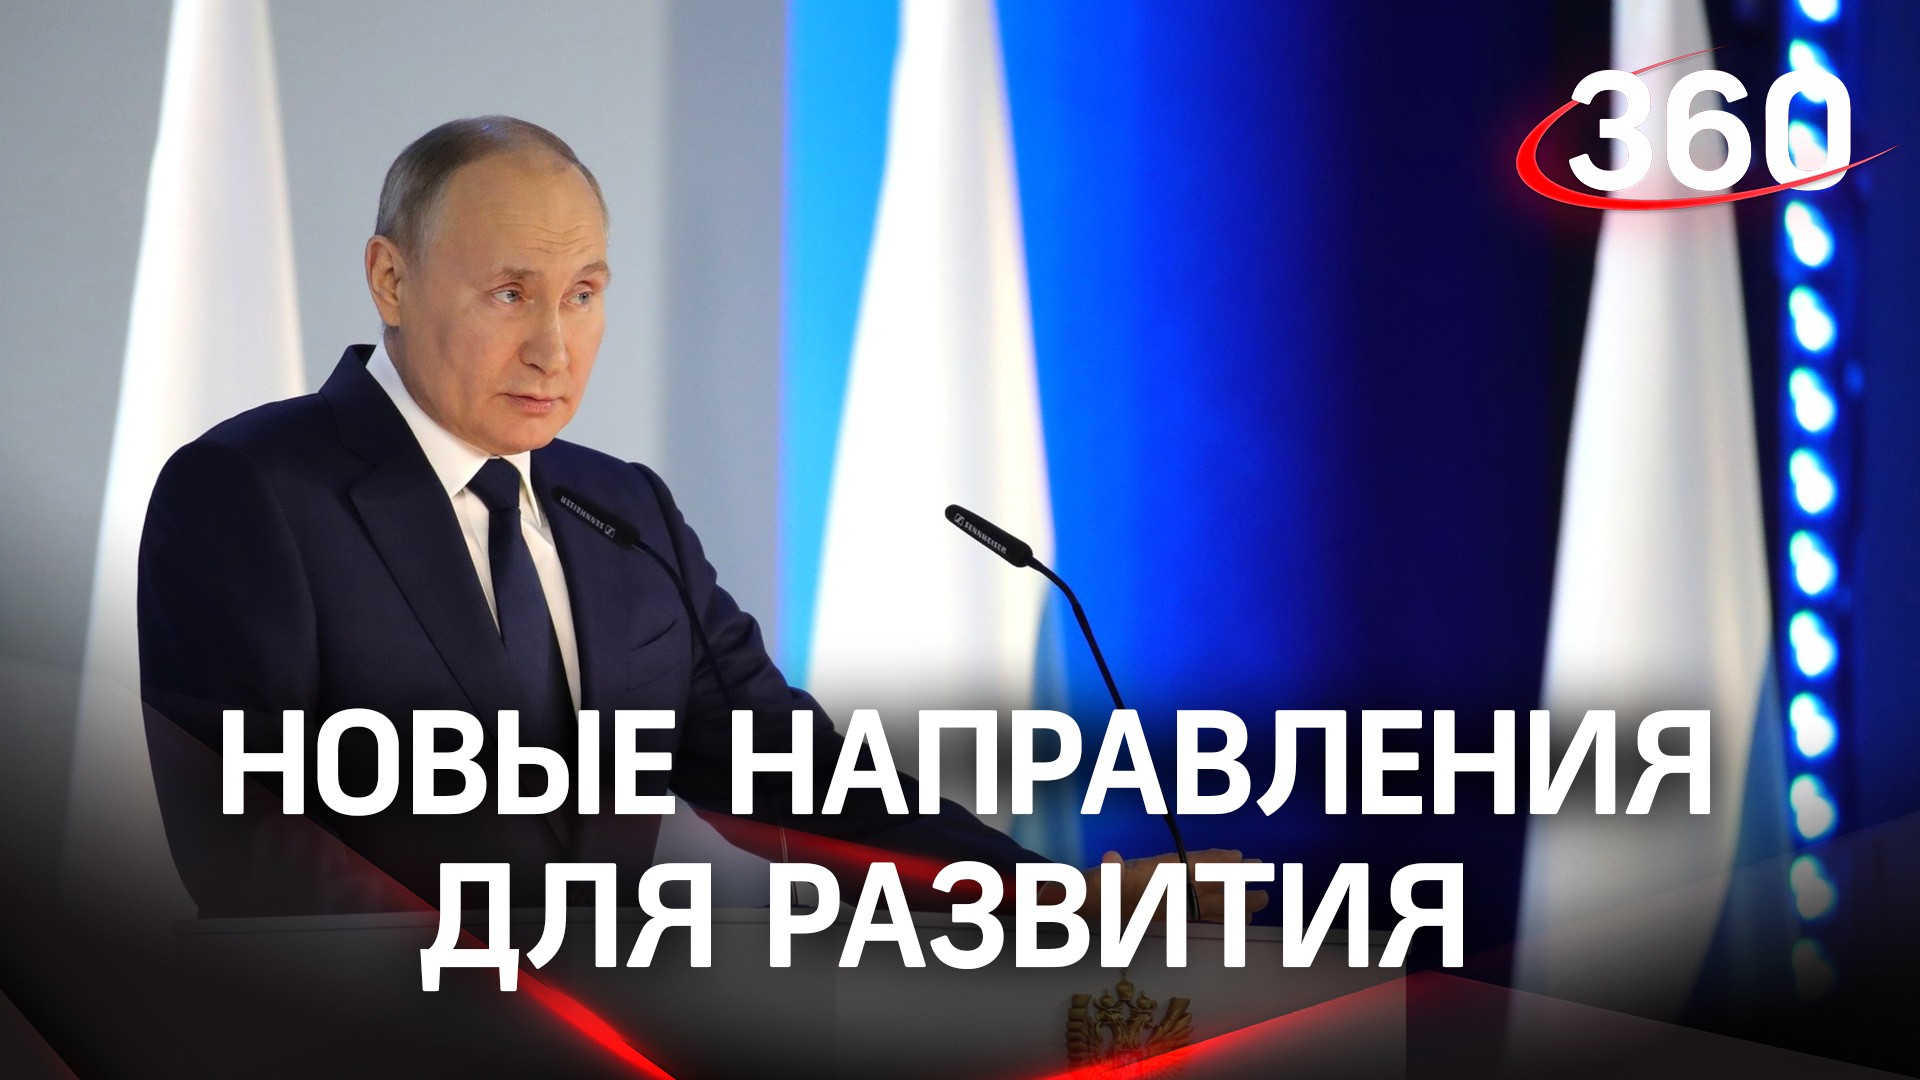 Путин обозначил основные направления, на которых нужно сосредоточить партнерскую работу государства